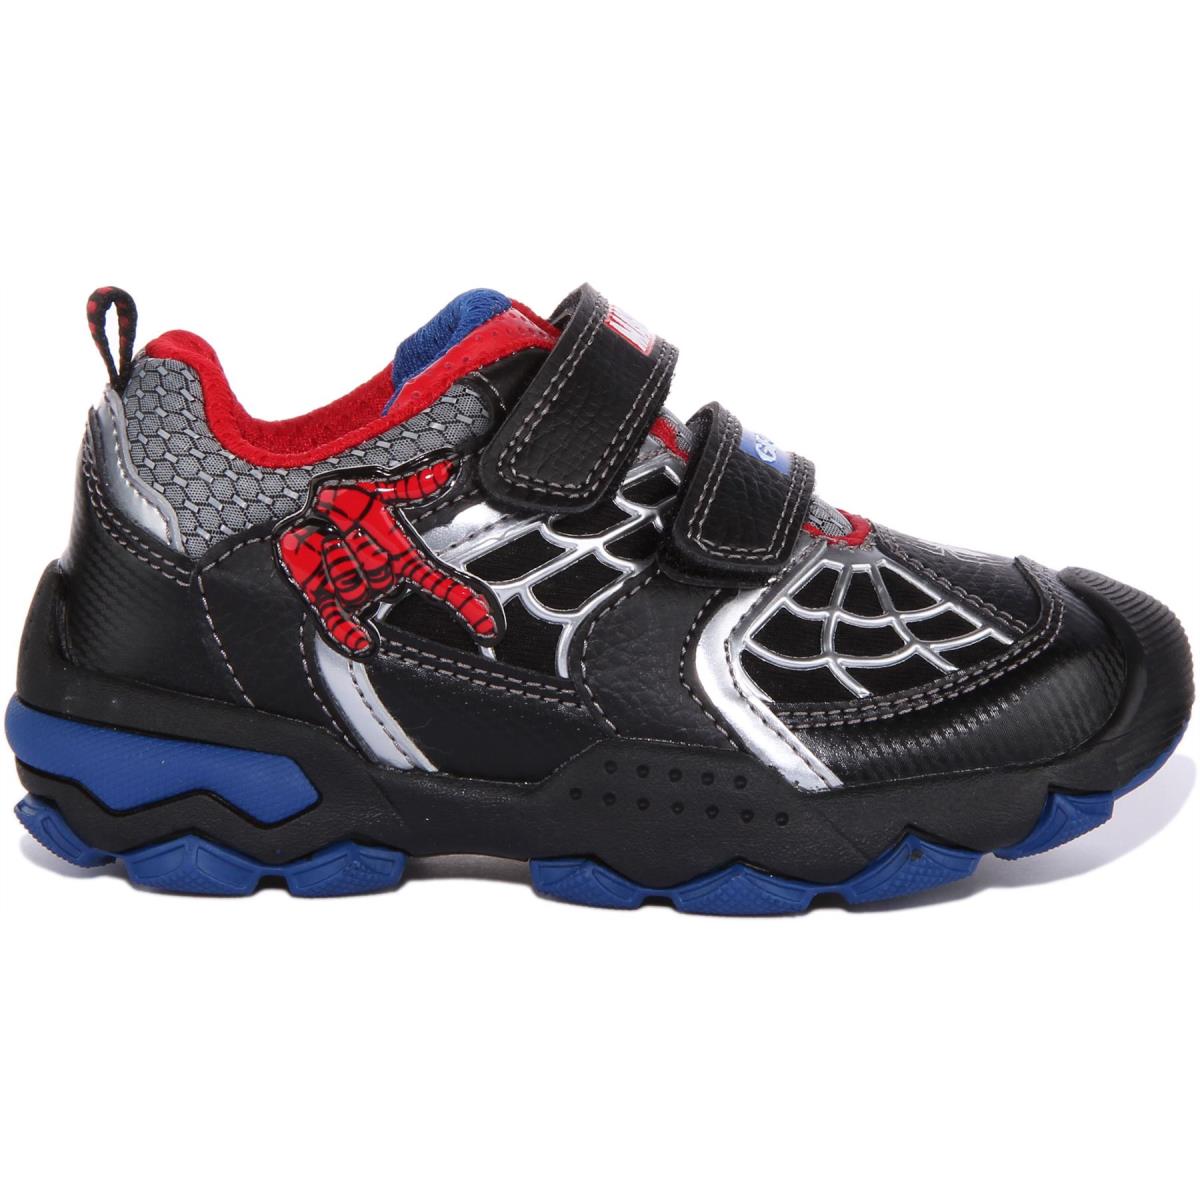 Geox J Buller X Spiderman Kids Breathable Sneakers In Black Red Size US 8C - 3Y